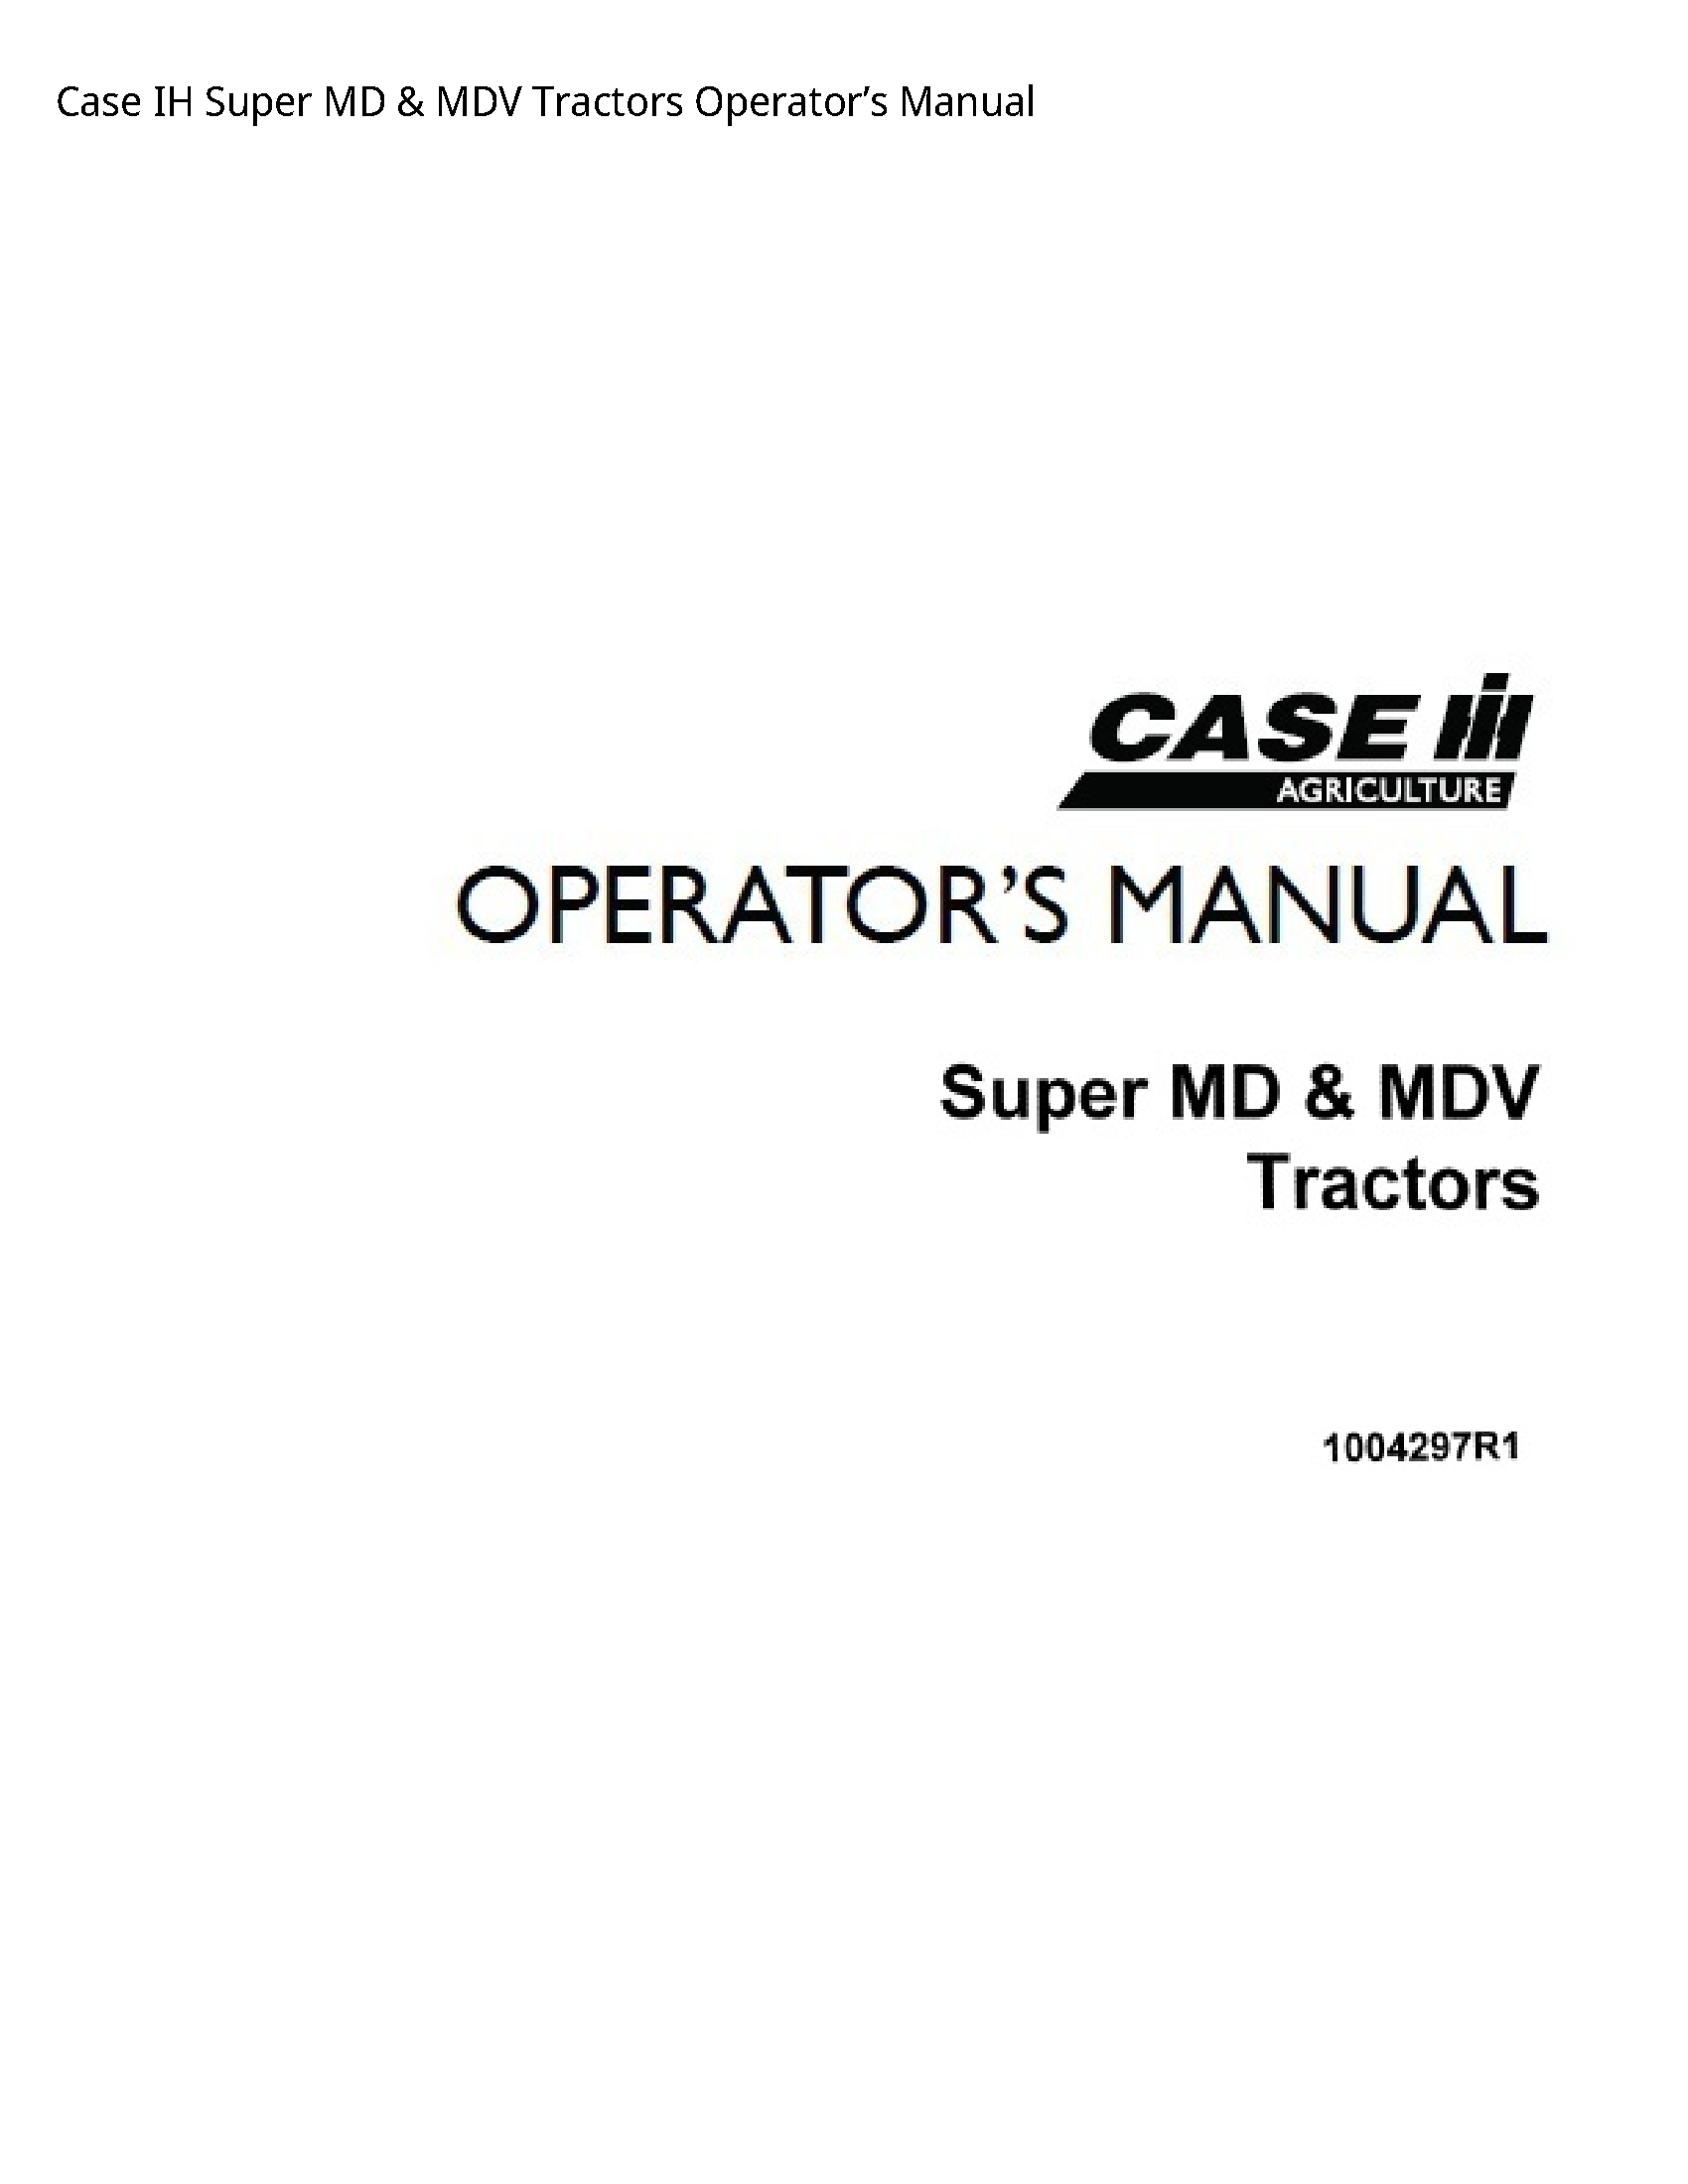 Case/Case IH IH Super MD MDV Tractors Operator’s manual